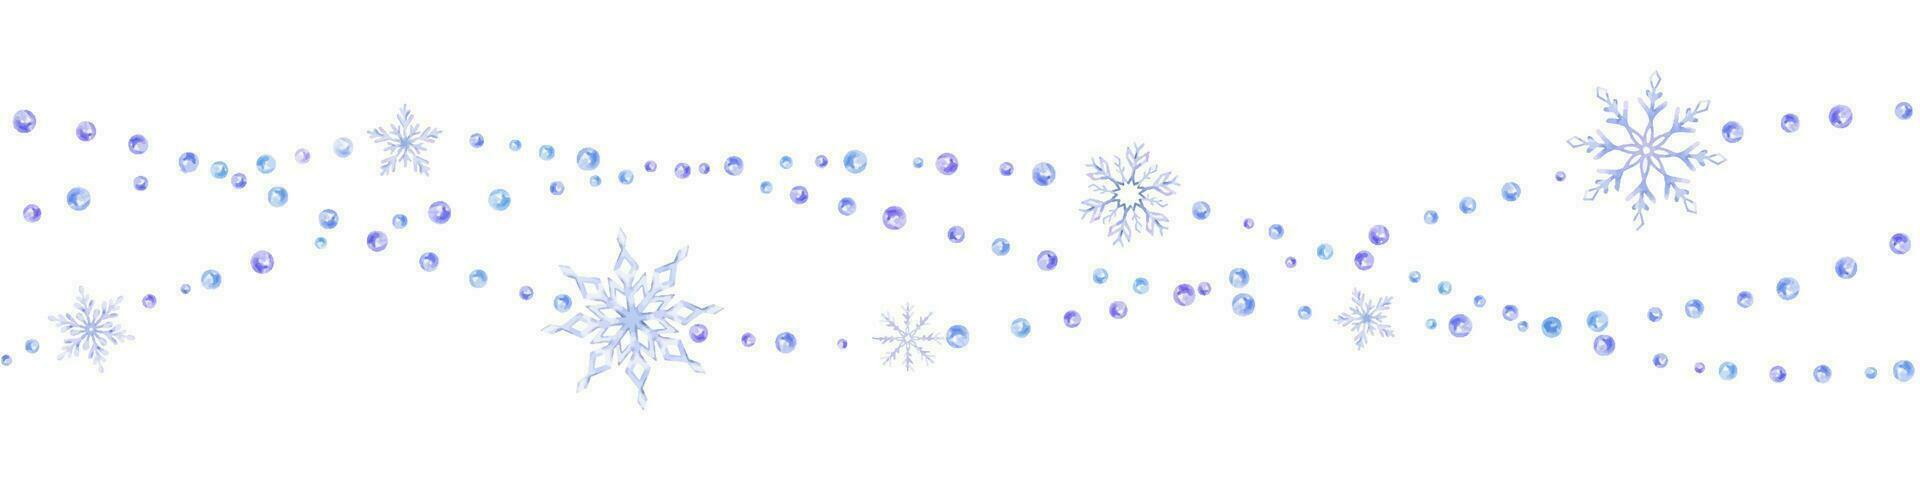 sneeuwvlok, sneeuw, sterren. naadloos grens. waterverf illustratie getrokken door handen. geïsoleerd. voor ansichtkaarten, uitnodigingen, kaarten vector